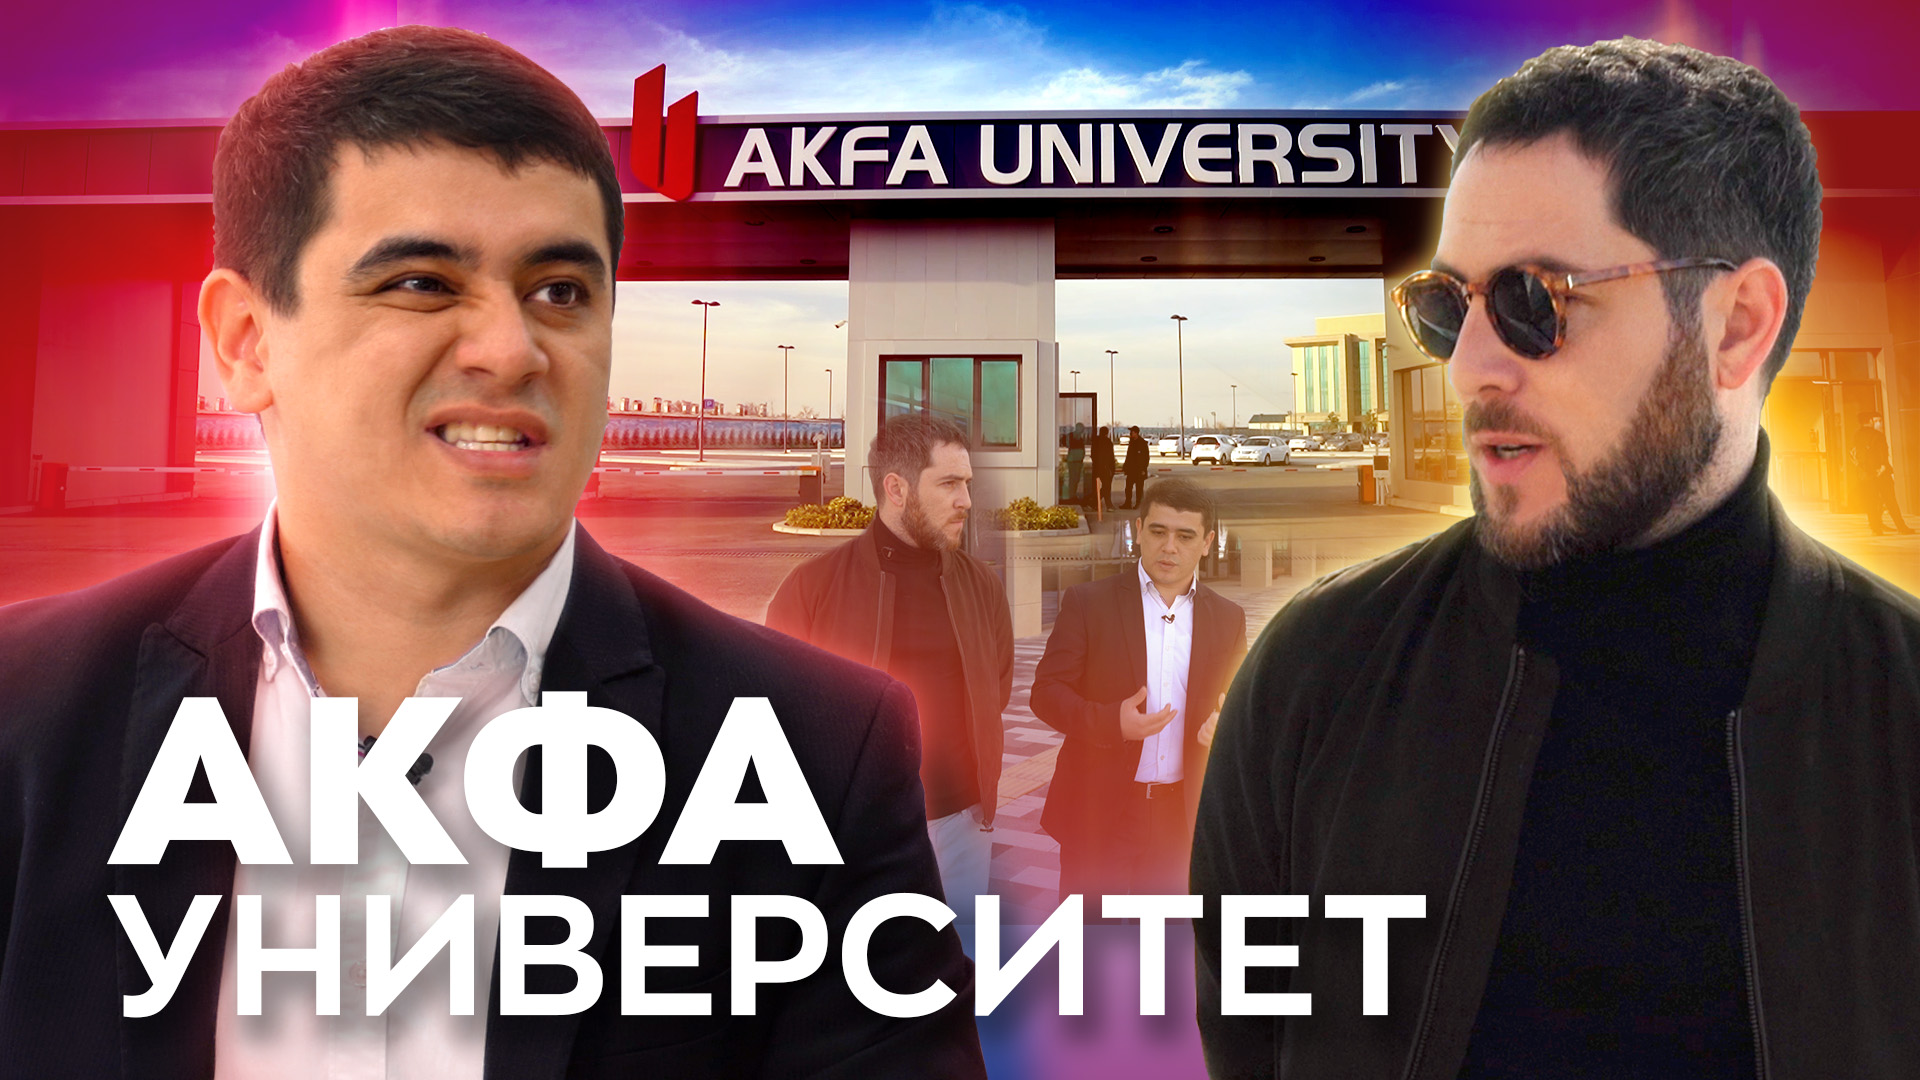 «Все, что вы хотели знать про AKFA Университет»: Alter Ego выпустил видеоинтервью с ректором вуза